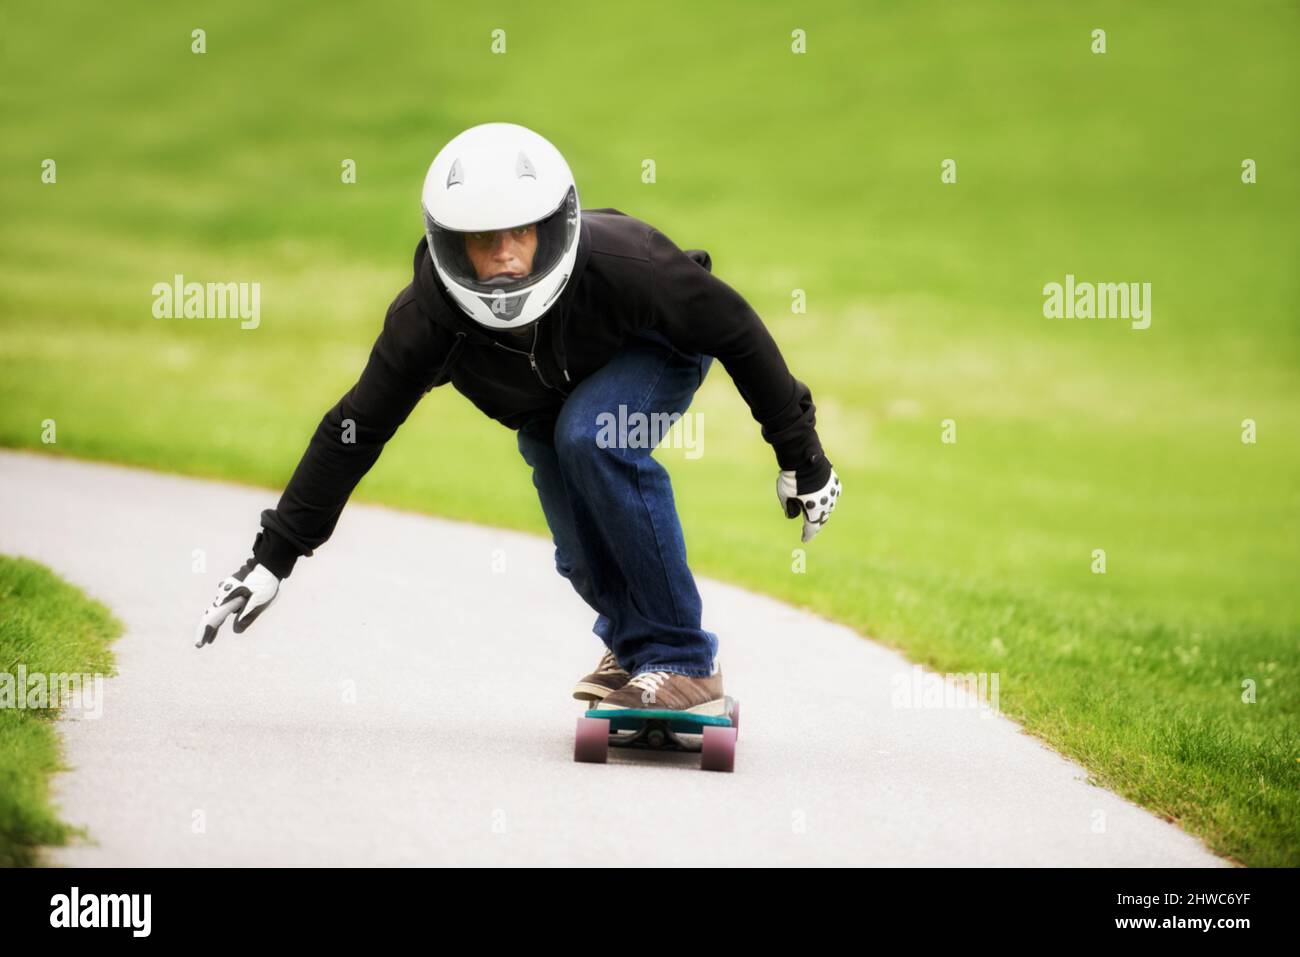 Axé sur la rapidité. Photo d'un skateboarder qui se rend sur une voie de son plateau. Banque D'Images